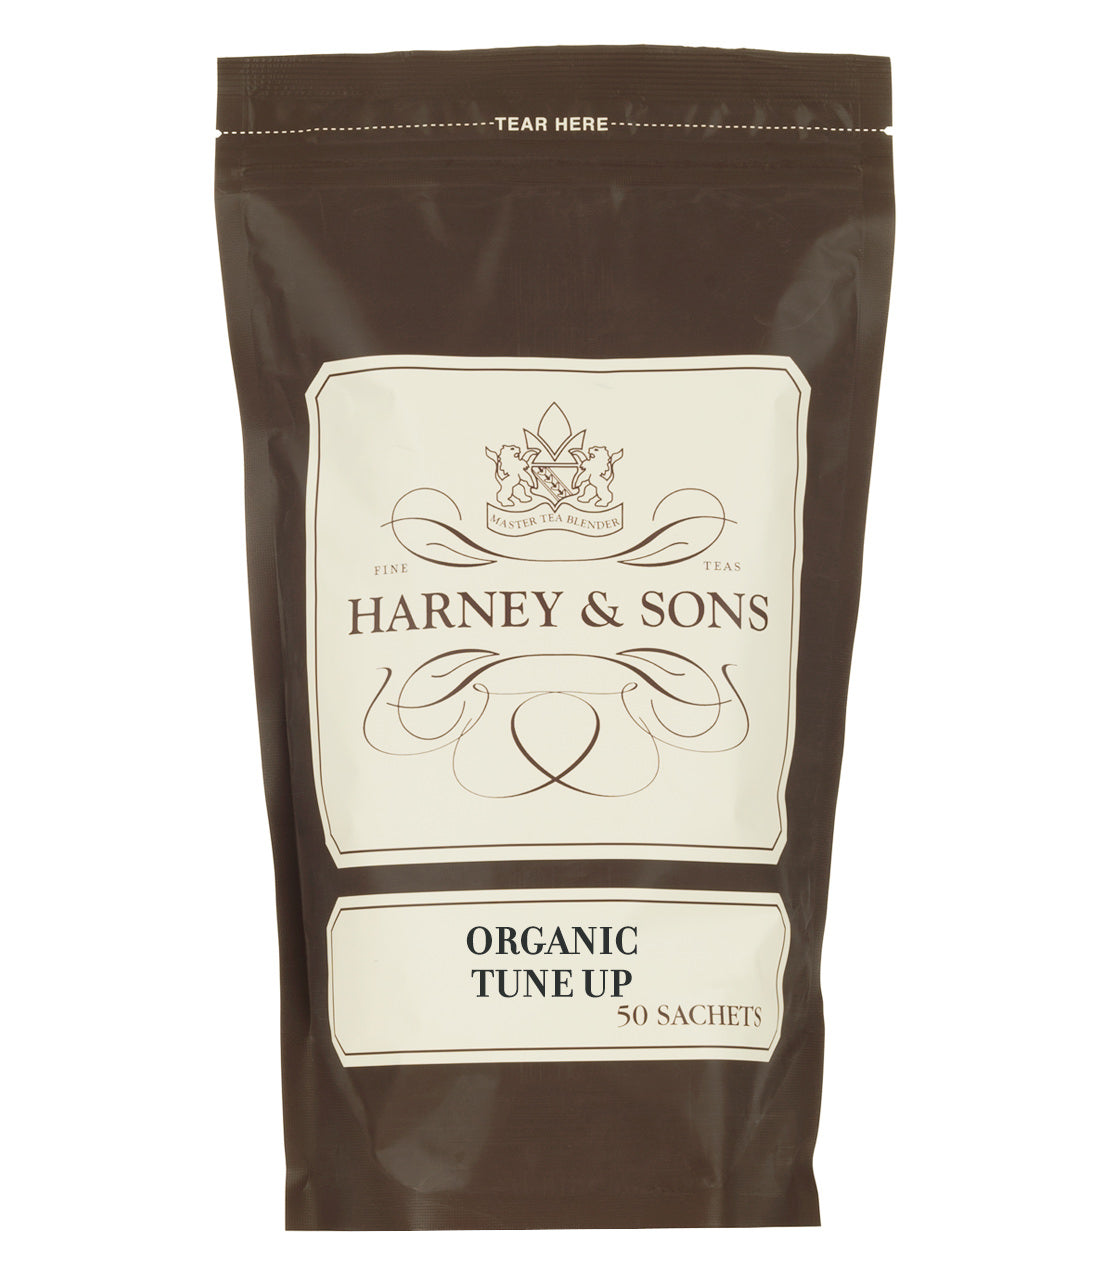 Organic Tune Up, Bag of 50 Sachets - Sachets Bag of 50 Sachets - Harney & Sons Fine Teas